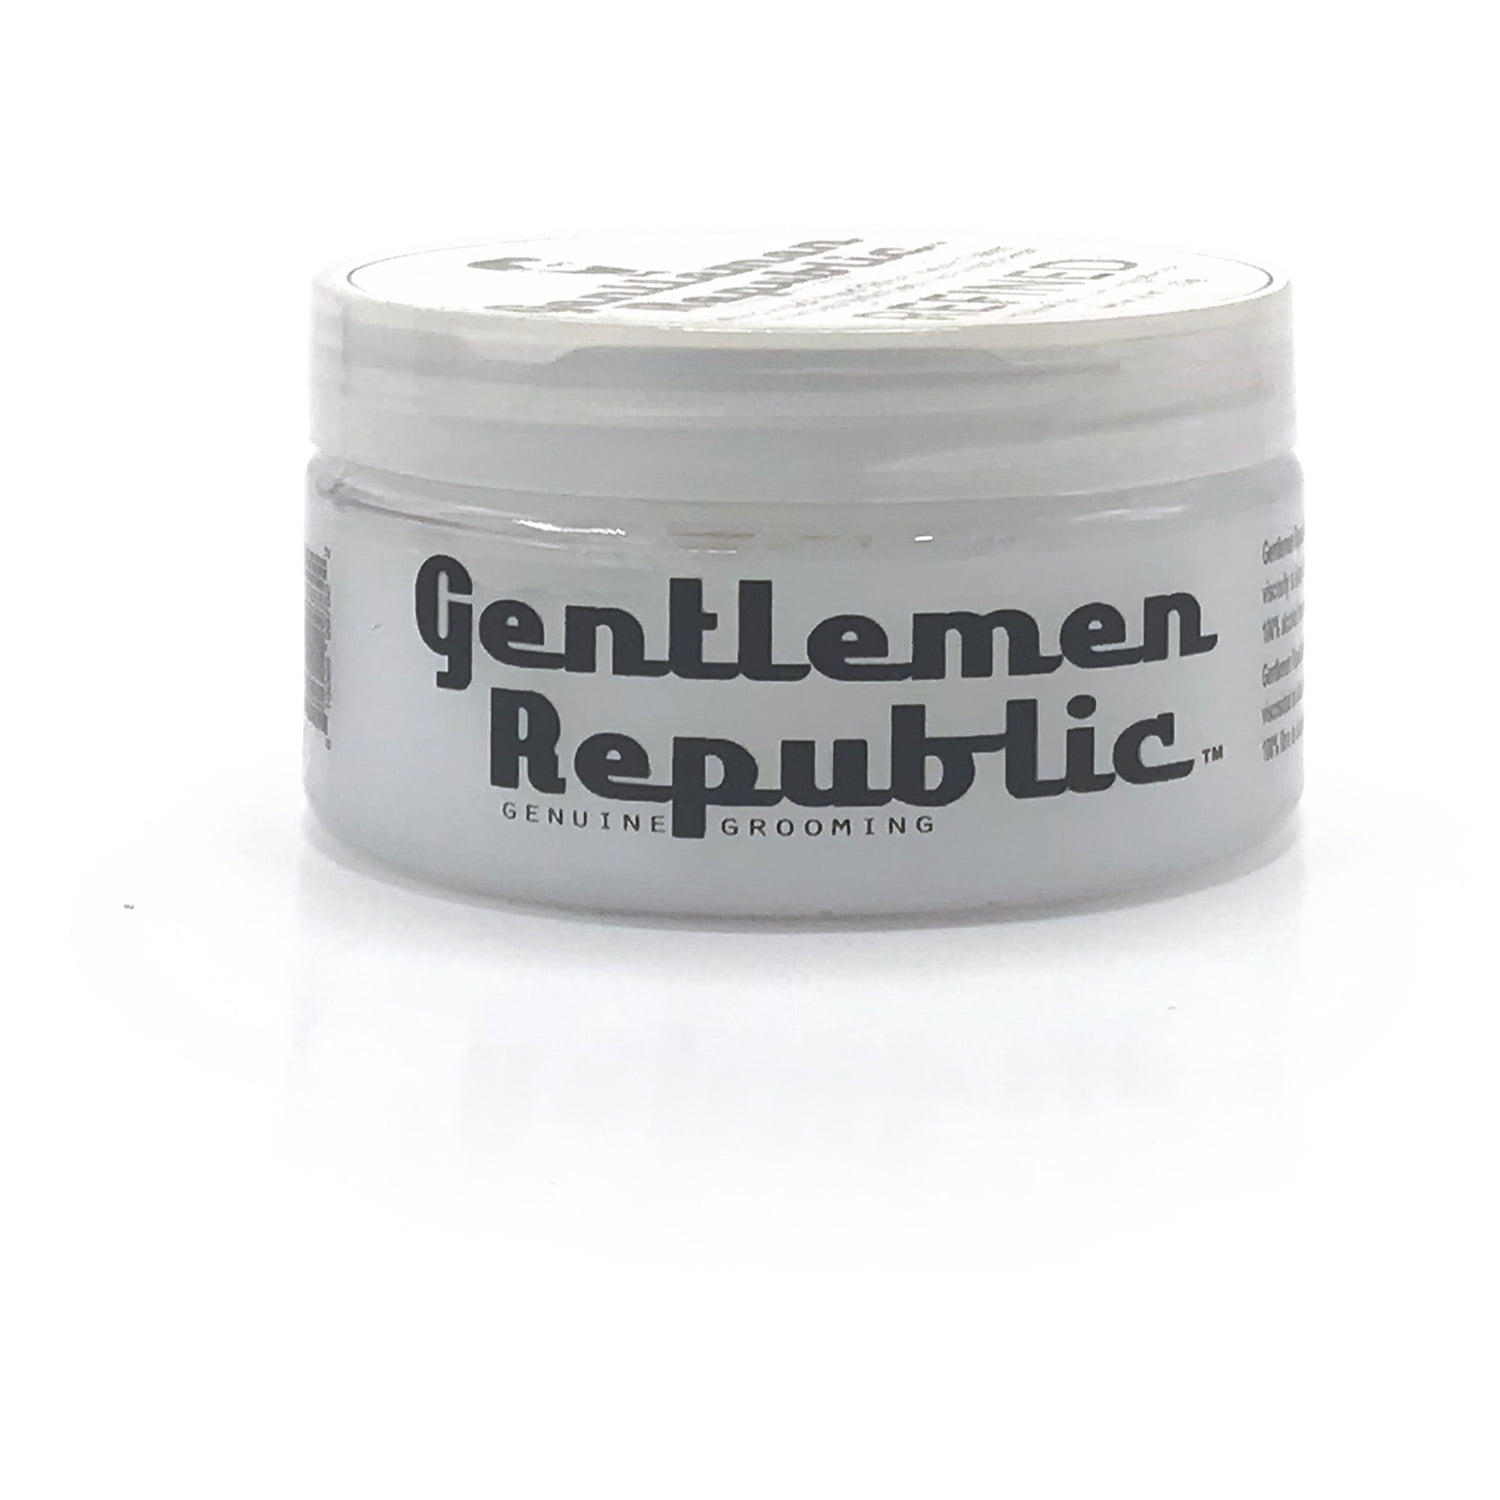 gentlemen republic refined